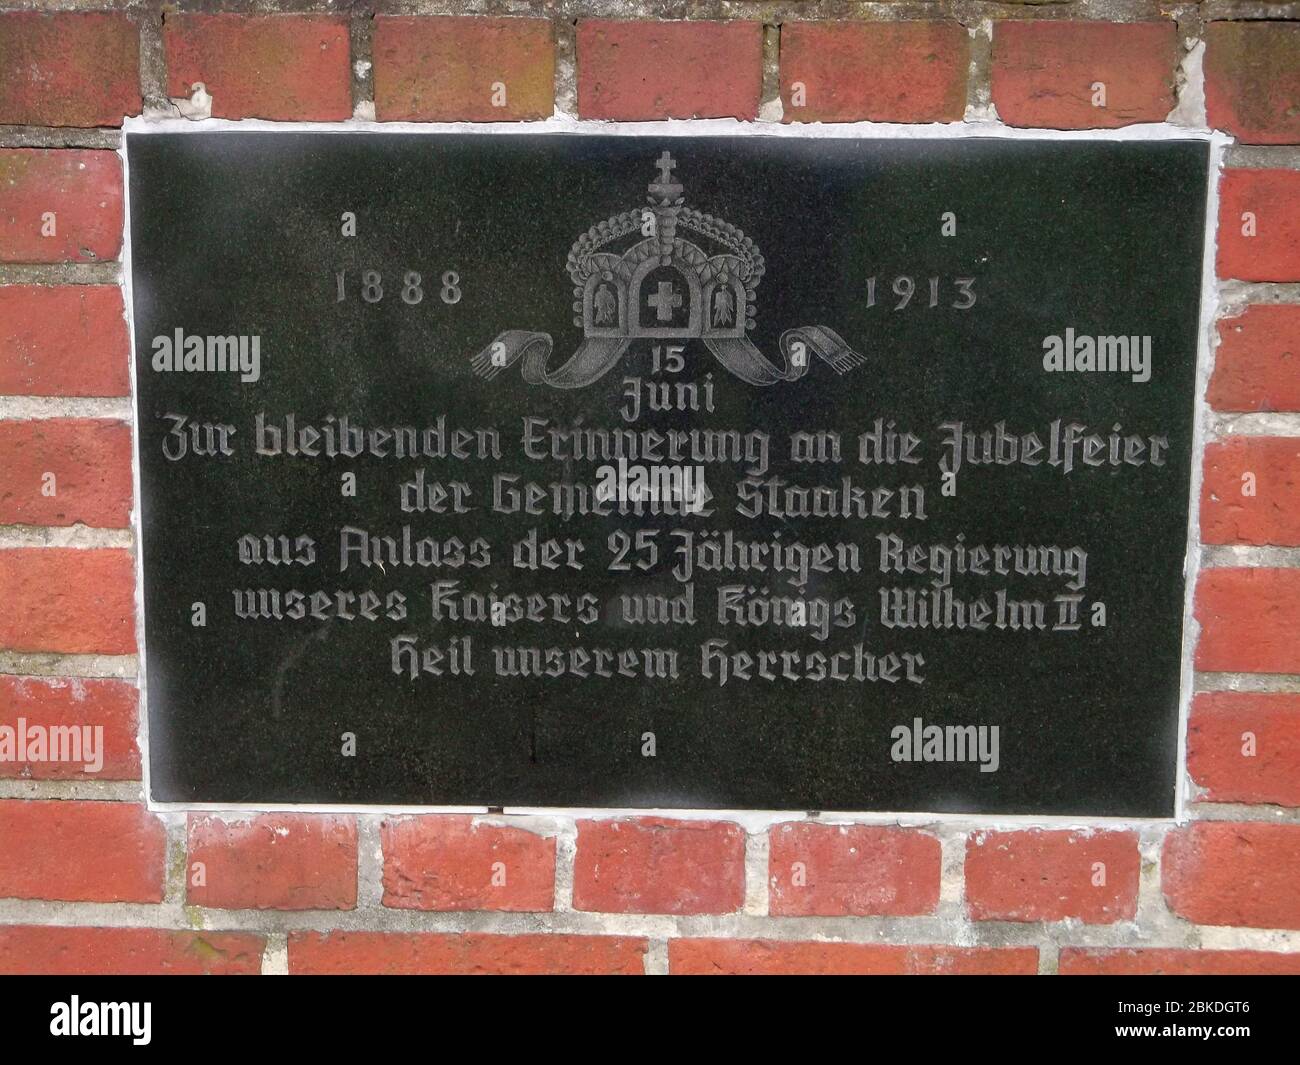 Zur bleibenden Erinnerung an die Jubelfeier der Gemeinde Staaken aus Anlass der 25 Jährigen Regierung unseres Kaisers und Königs Wilhelm II. Heil unse Stock Photo